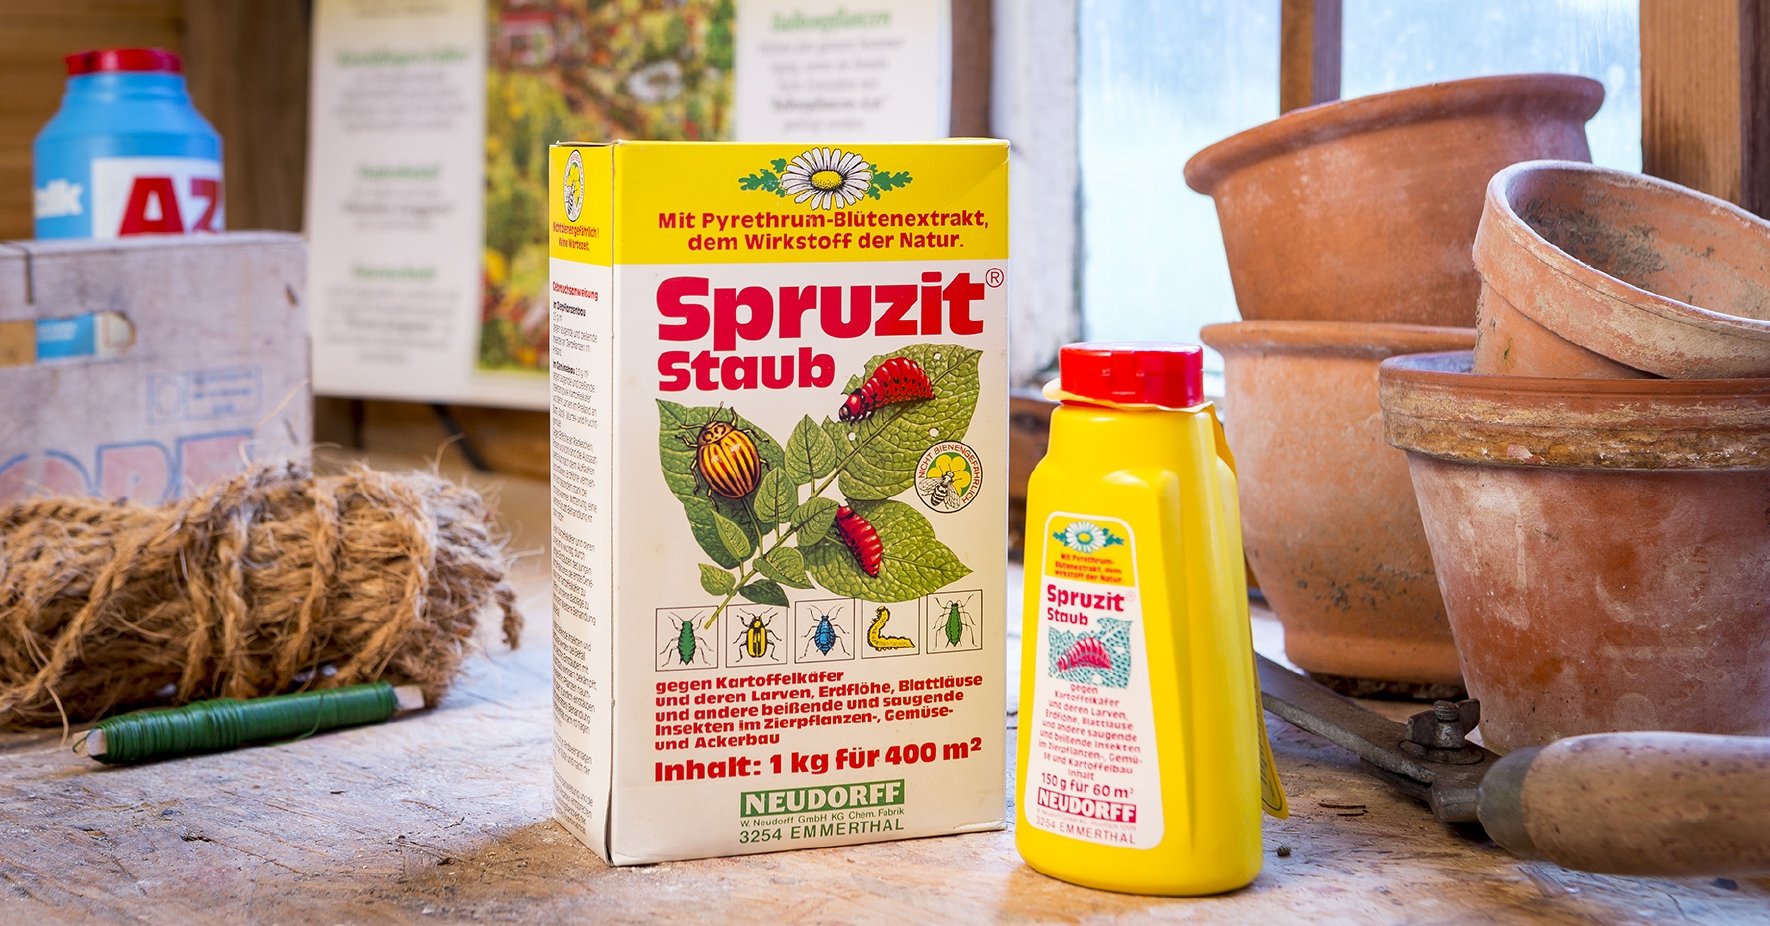 Produktet Spruzit Staub i sin tidligere emballasje